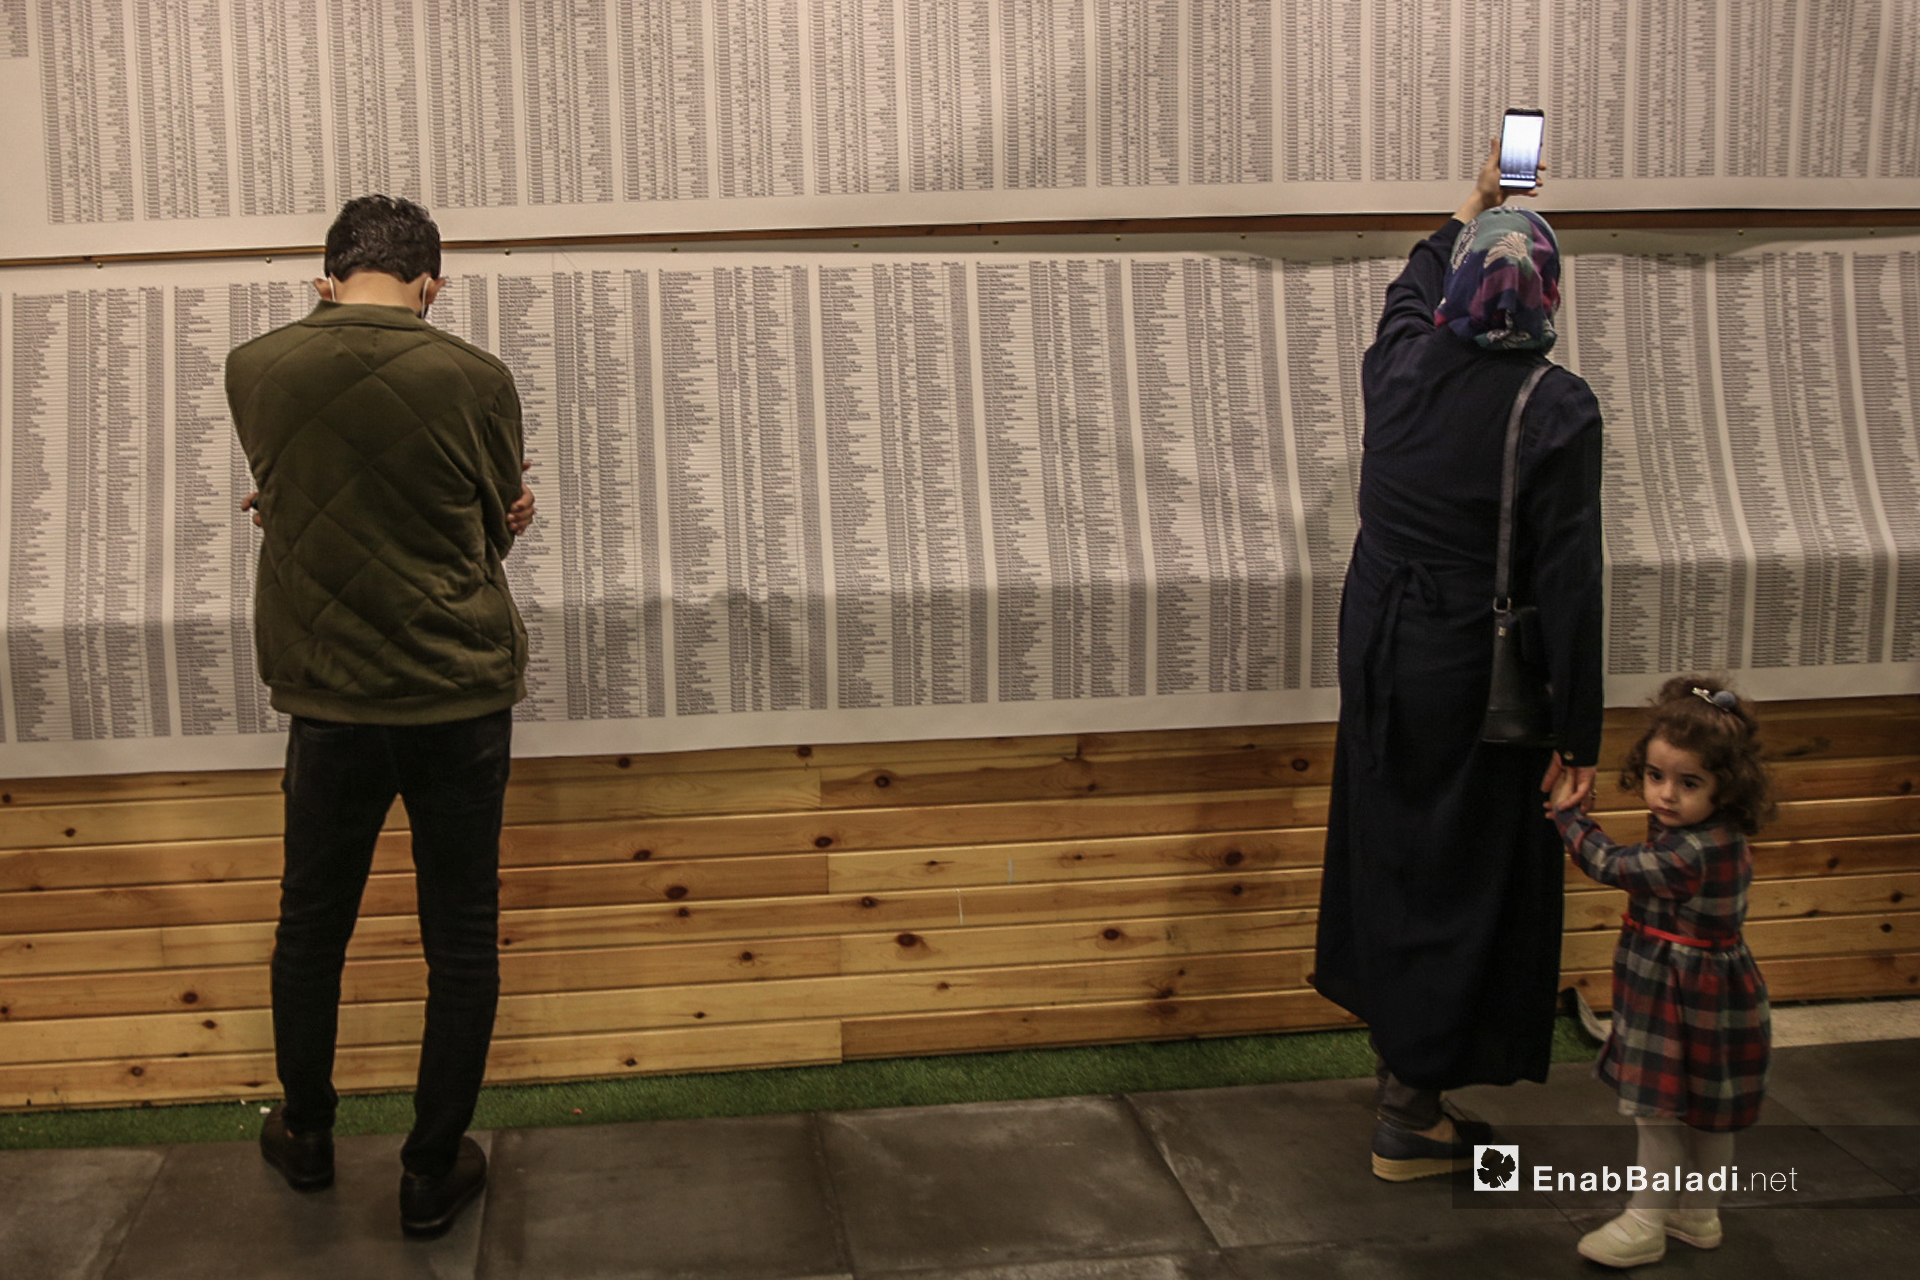 ناشطين في معرض "سُكّان الذاكرة" الذي يوثق بالصور و الاسماء و التواريخ 4600 طفل سوري على لوحة طولها 70 متر في اسطنبول - 13 تشرين أول (عنب بلدي/ عبد المعين حمص)